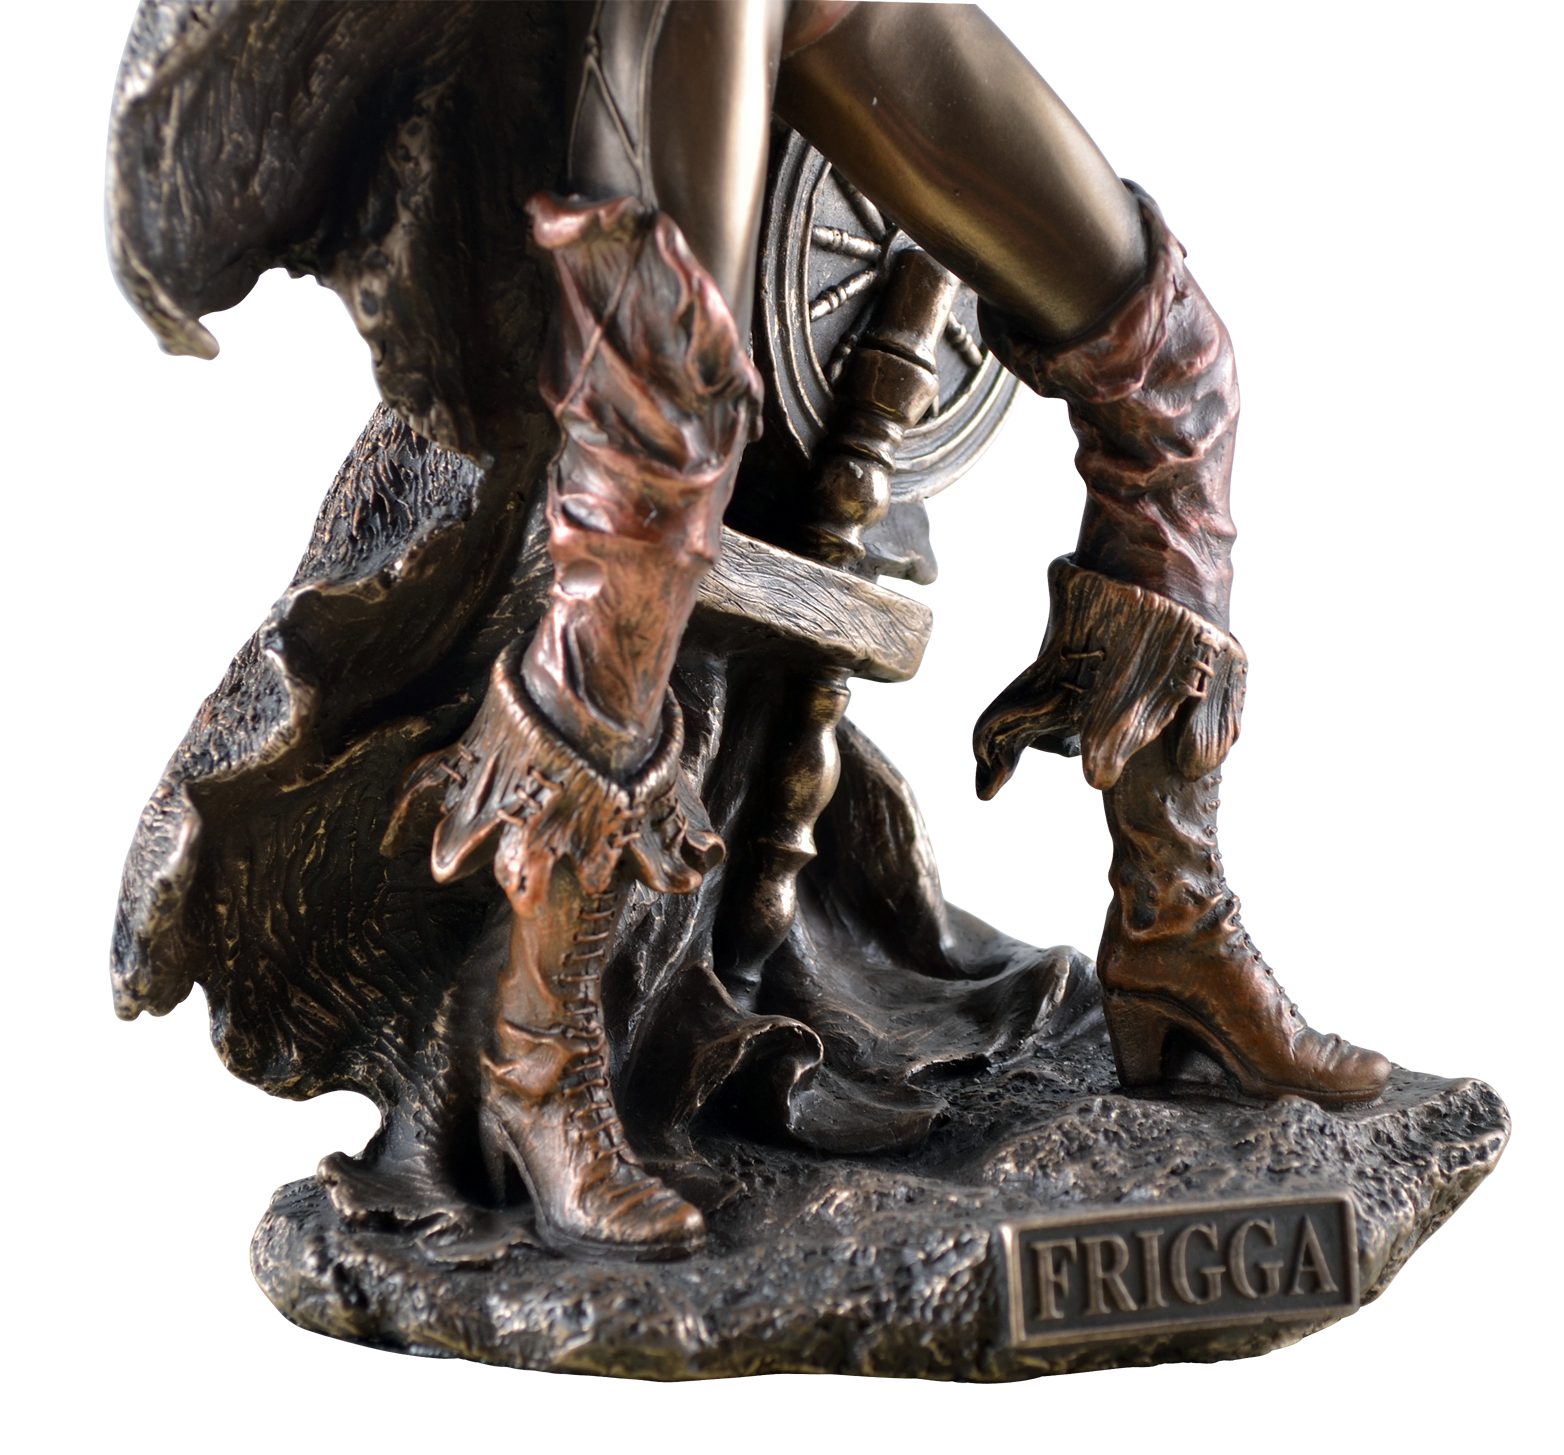 Vogler direct Gmbh Dekofigur Odins, Frigga, bronziert von by Hand Frau Göttin Nordische Veronese